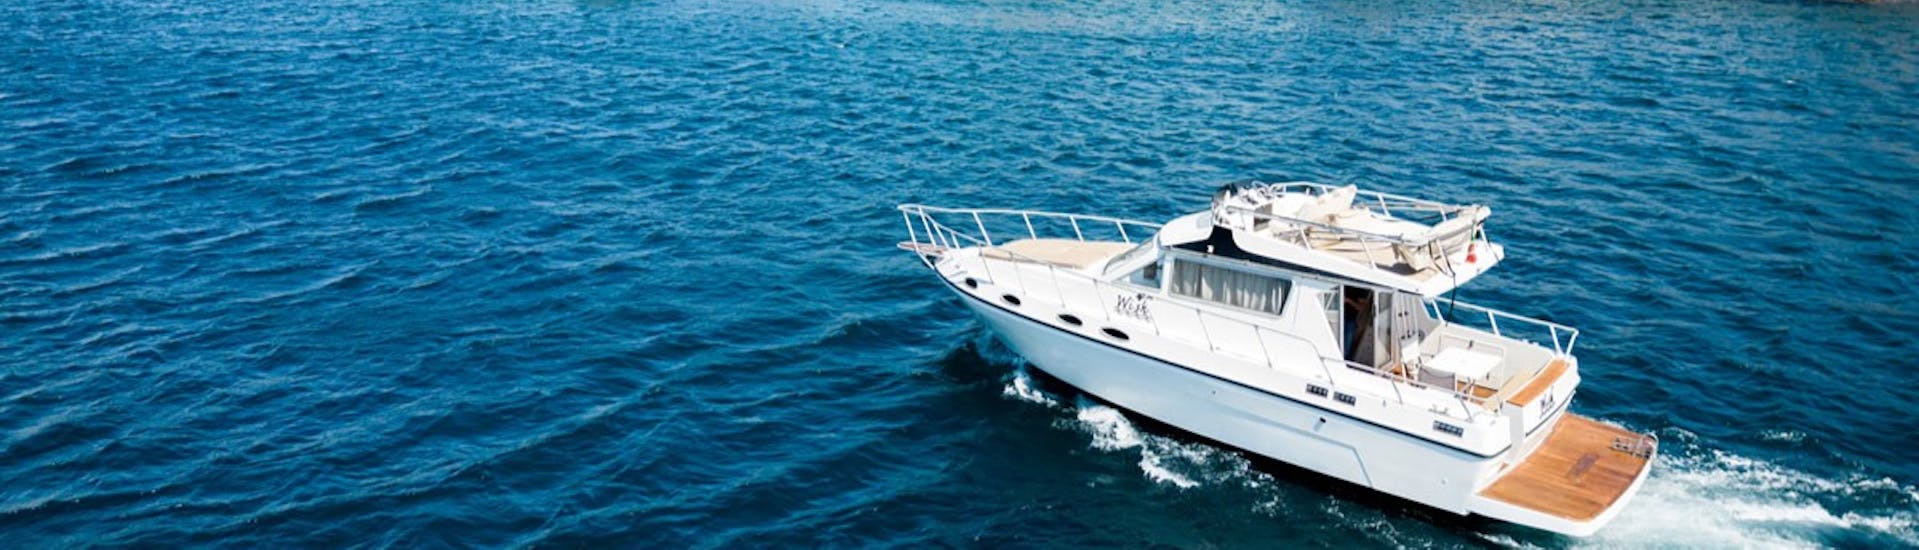 De boot Wish tijdens de Privéboottocht van Catania naar Brucoli met aperitief met Wish Boat Rent Catania.